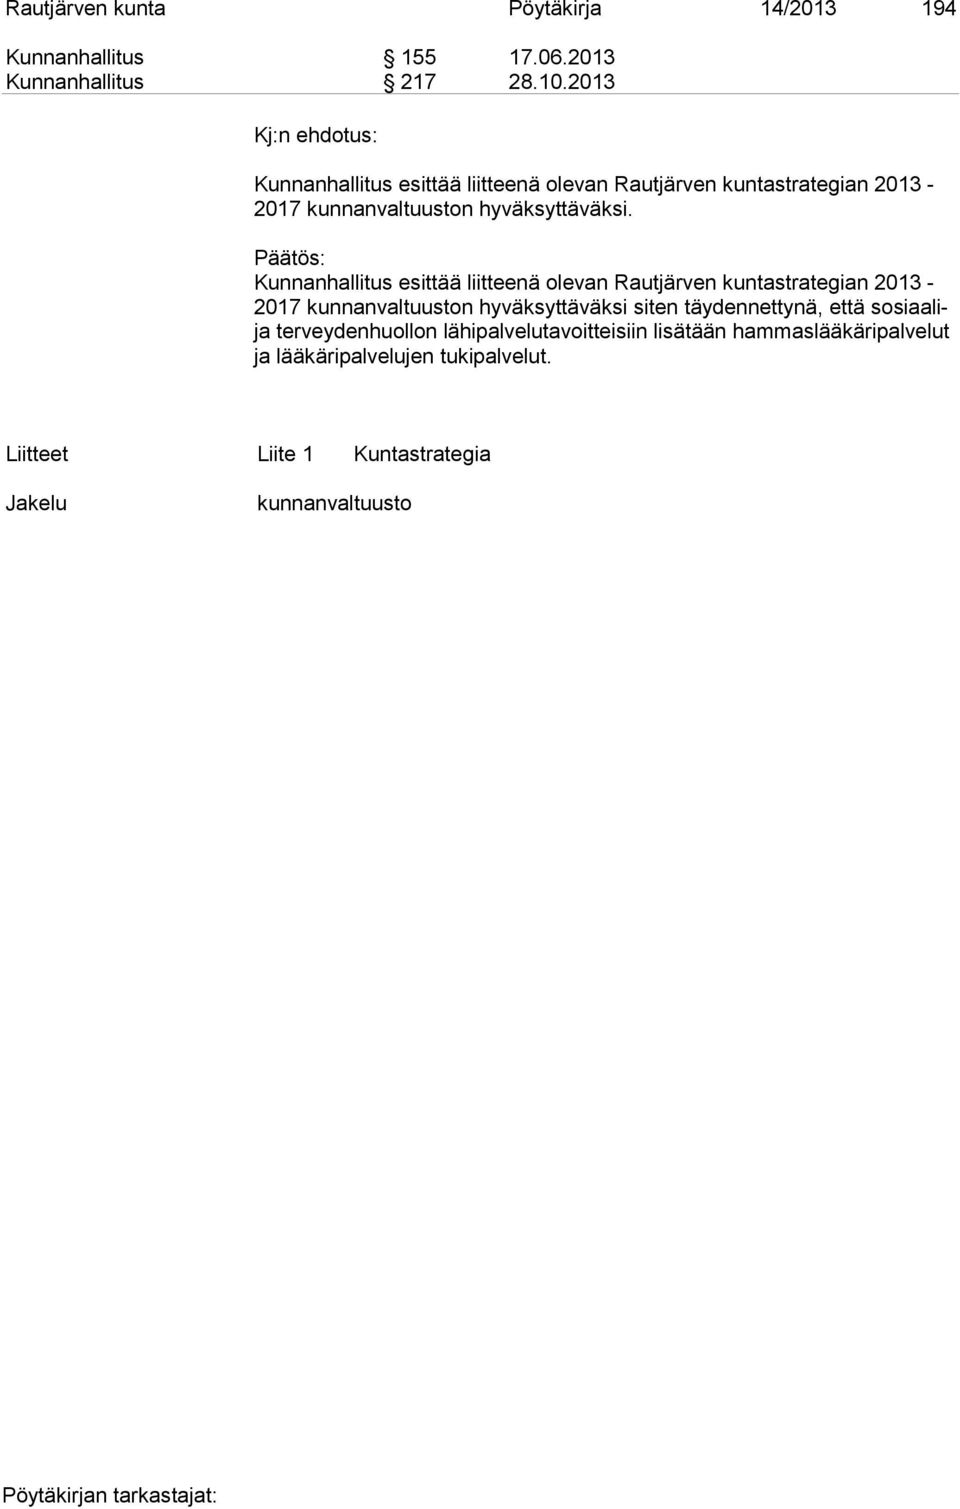 Kunnanhallitus esittää liitteenä olevan Rautjärven kuntastrategian 2013-2017 kunnanvaltuuston hyväksyttäväksi siten